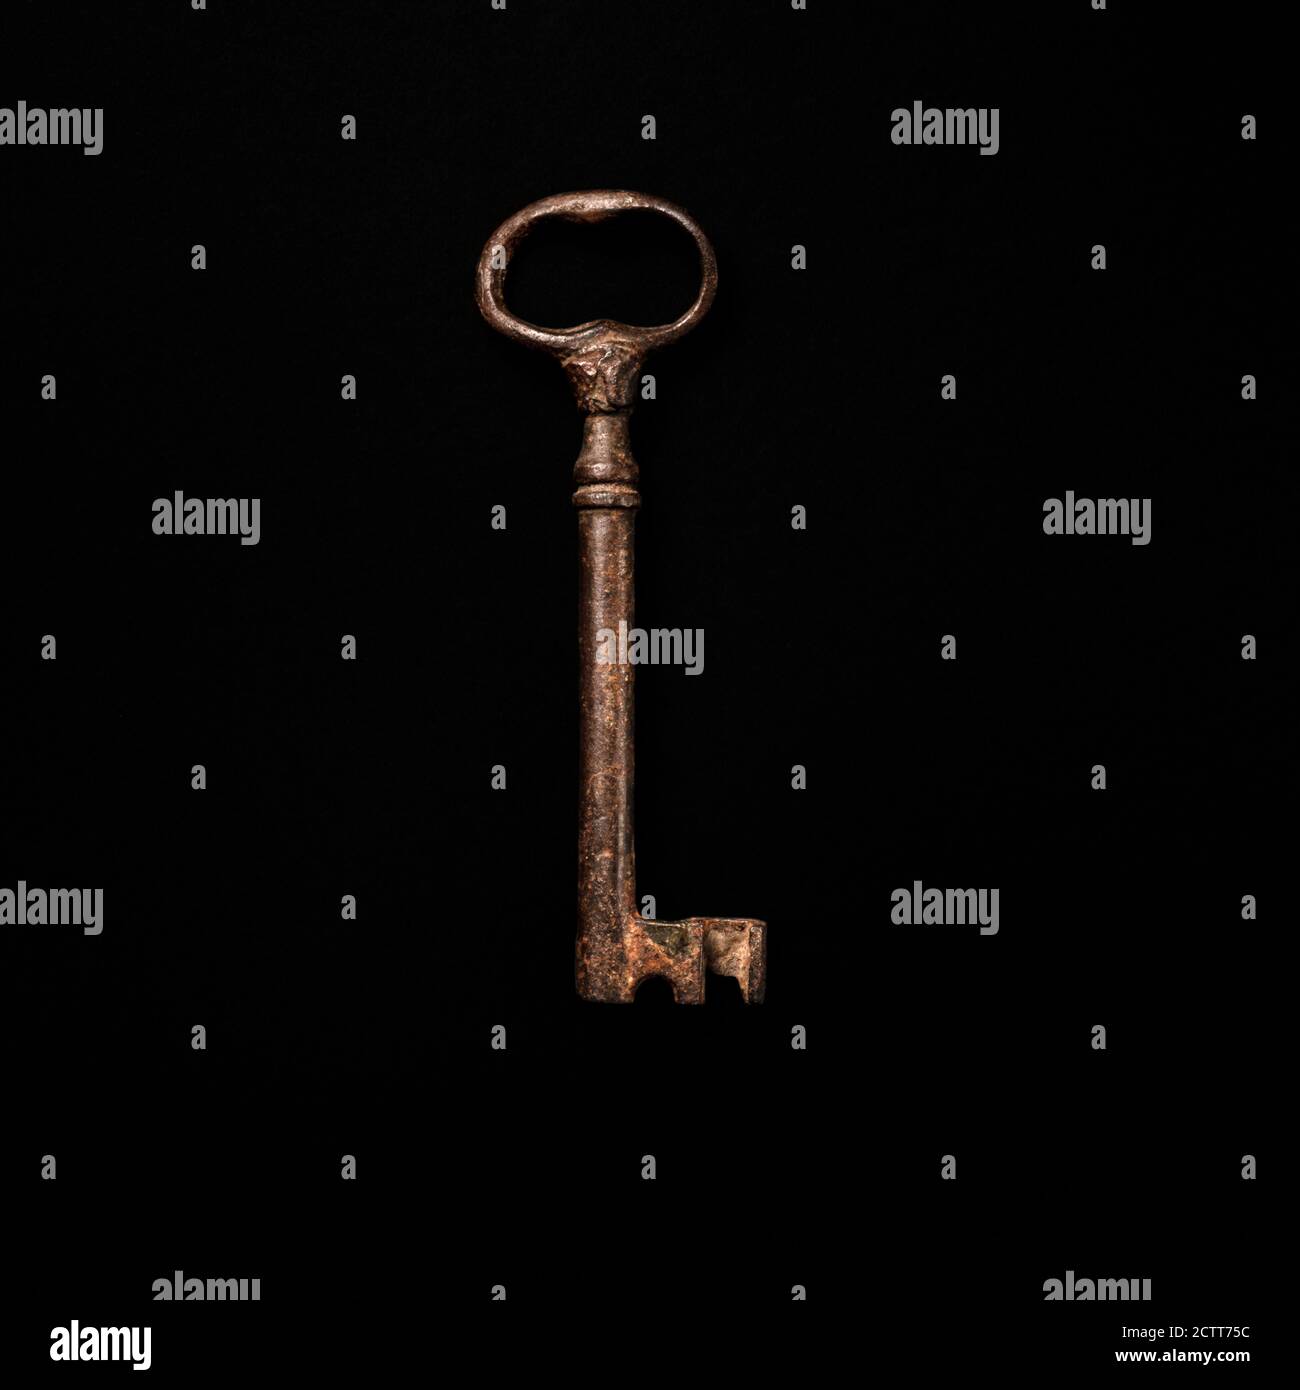 Antique key on black background Stock Photo